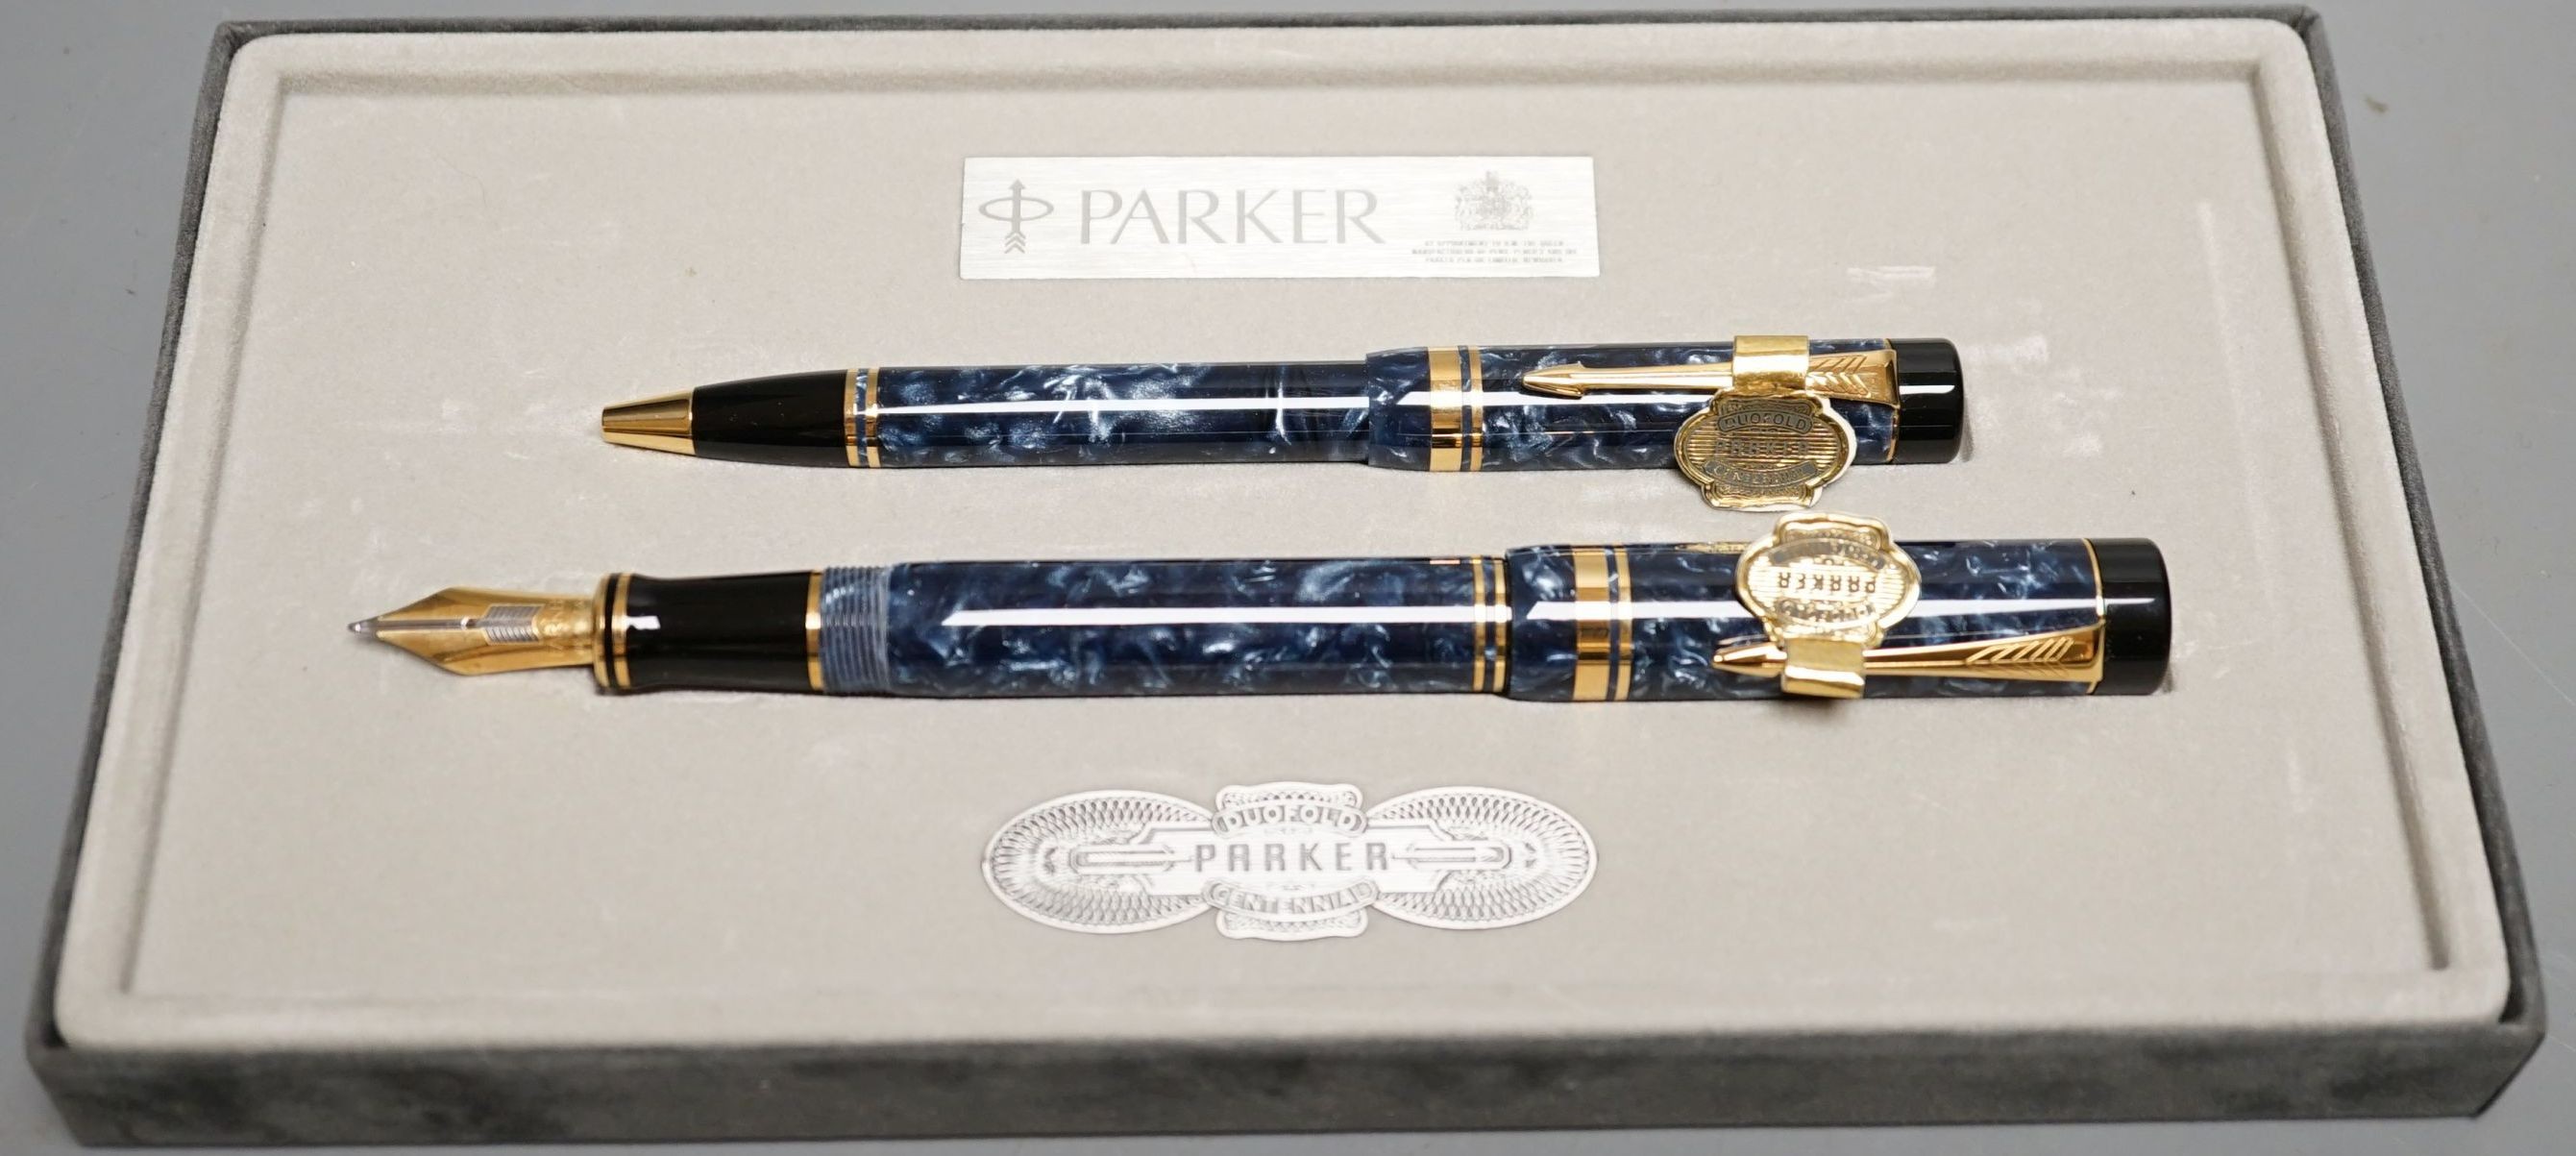 A Parker pen set boxed